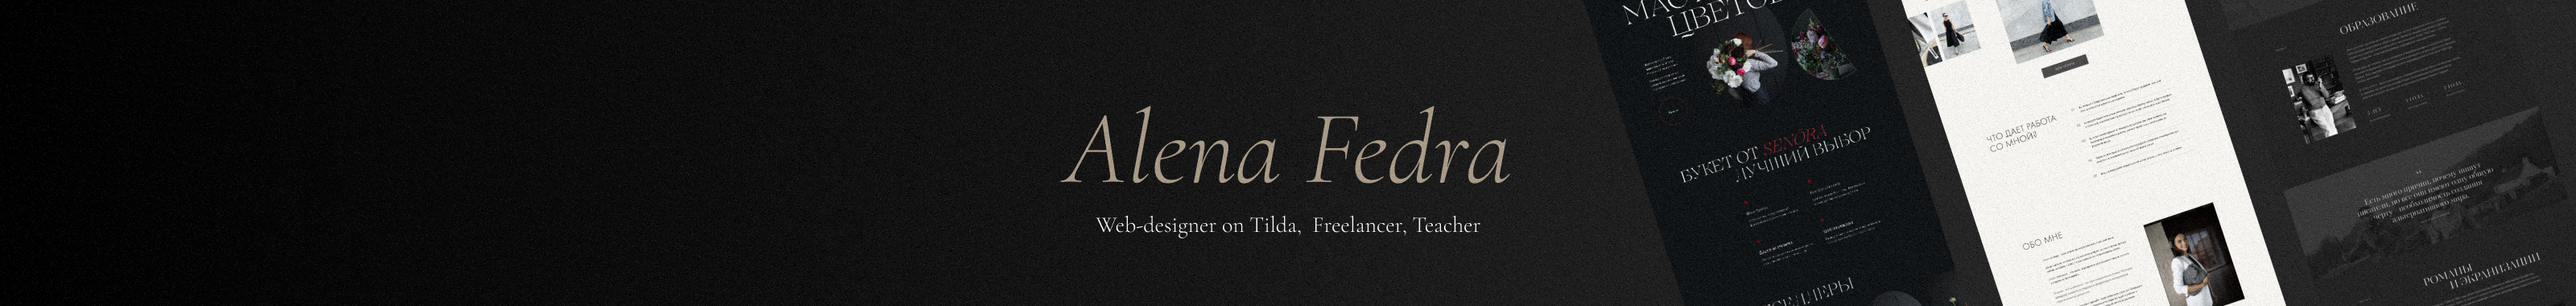 Alena Fedra's profile banner